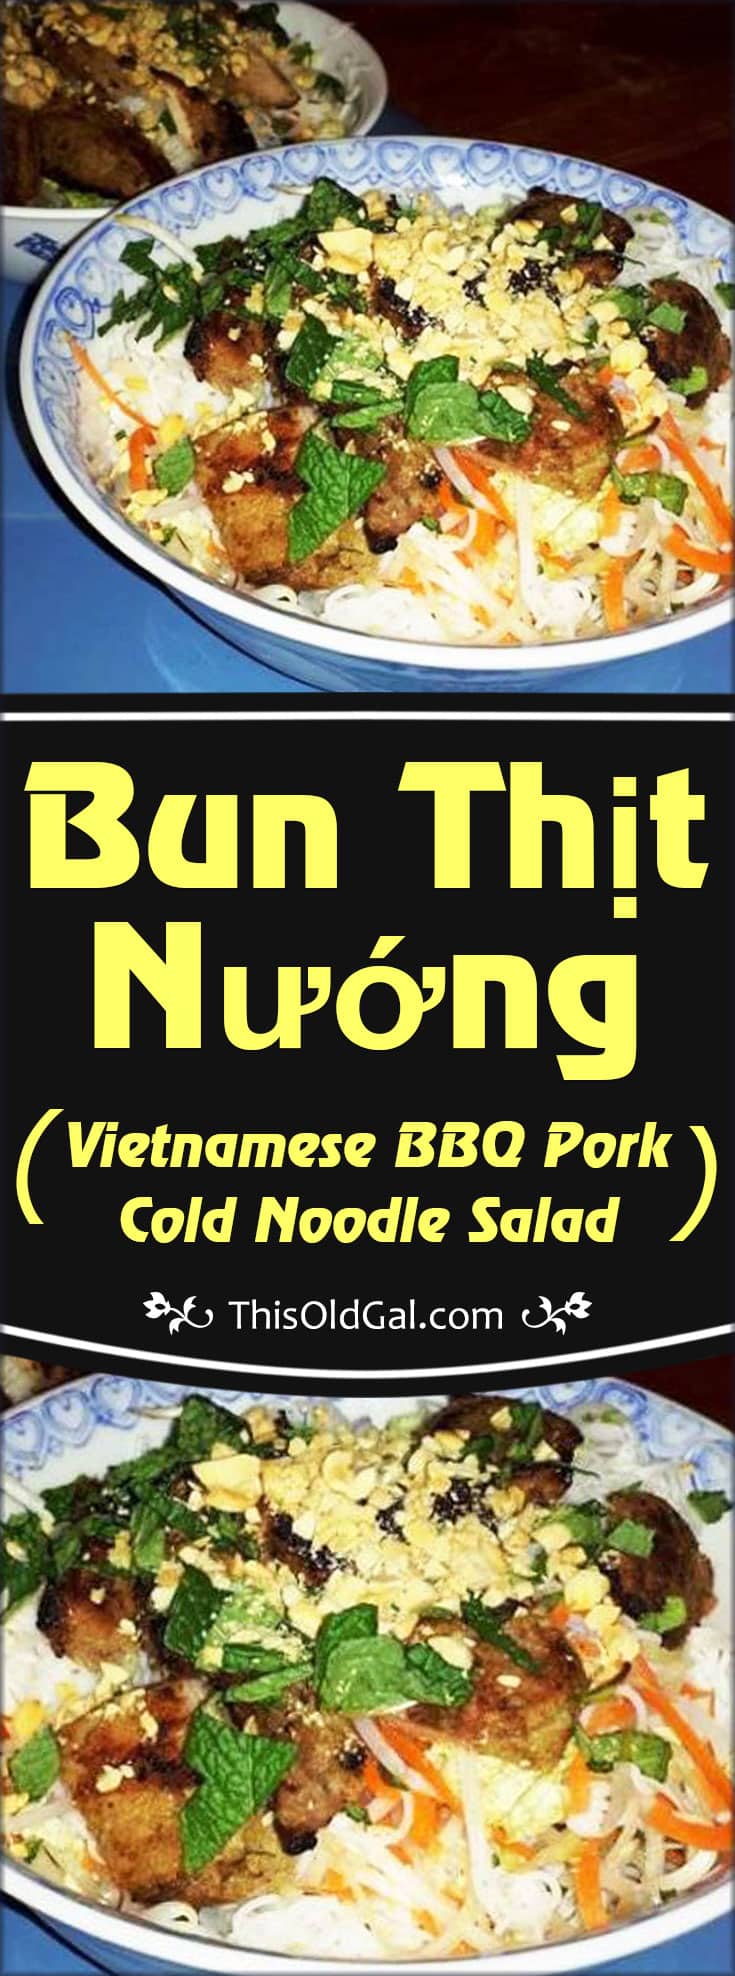 Bun Thịt Nướng (Vietnamese BBQ Pork Cold Noodle Salad)